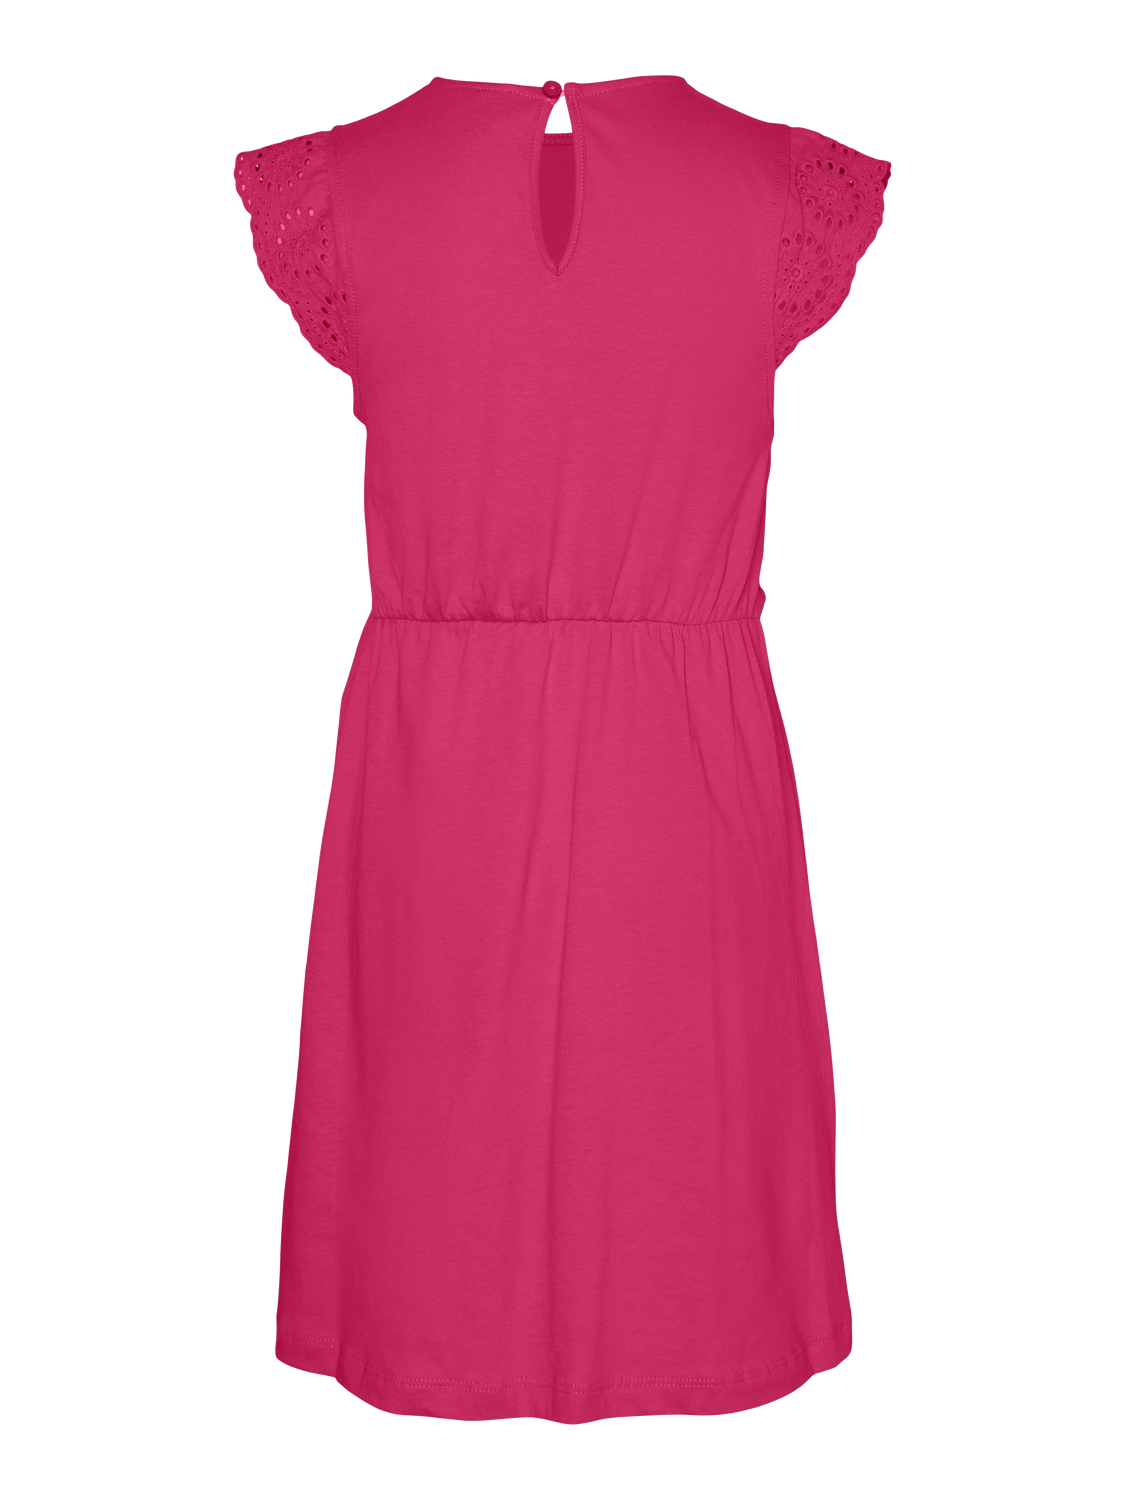 VMEMILY Dress - Raspberry Sorbet